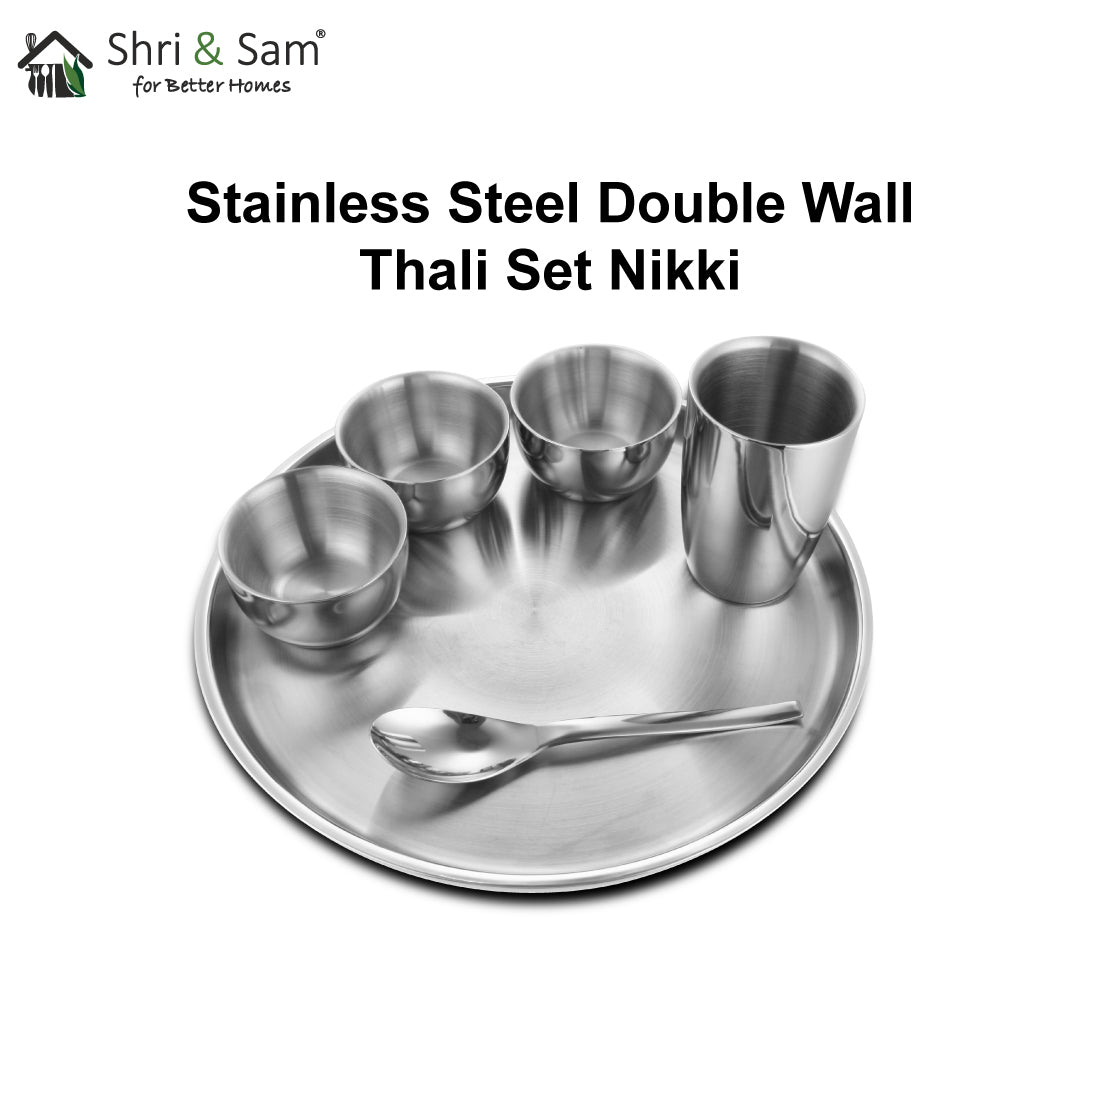 Stainless Steel Double Wall Thali Set Nikki